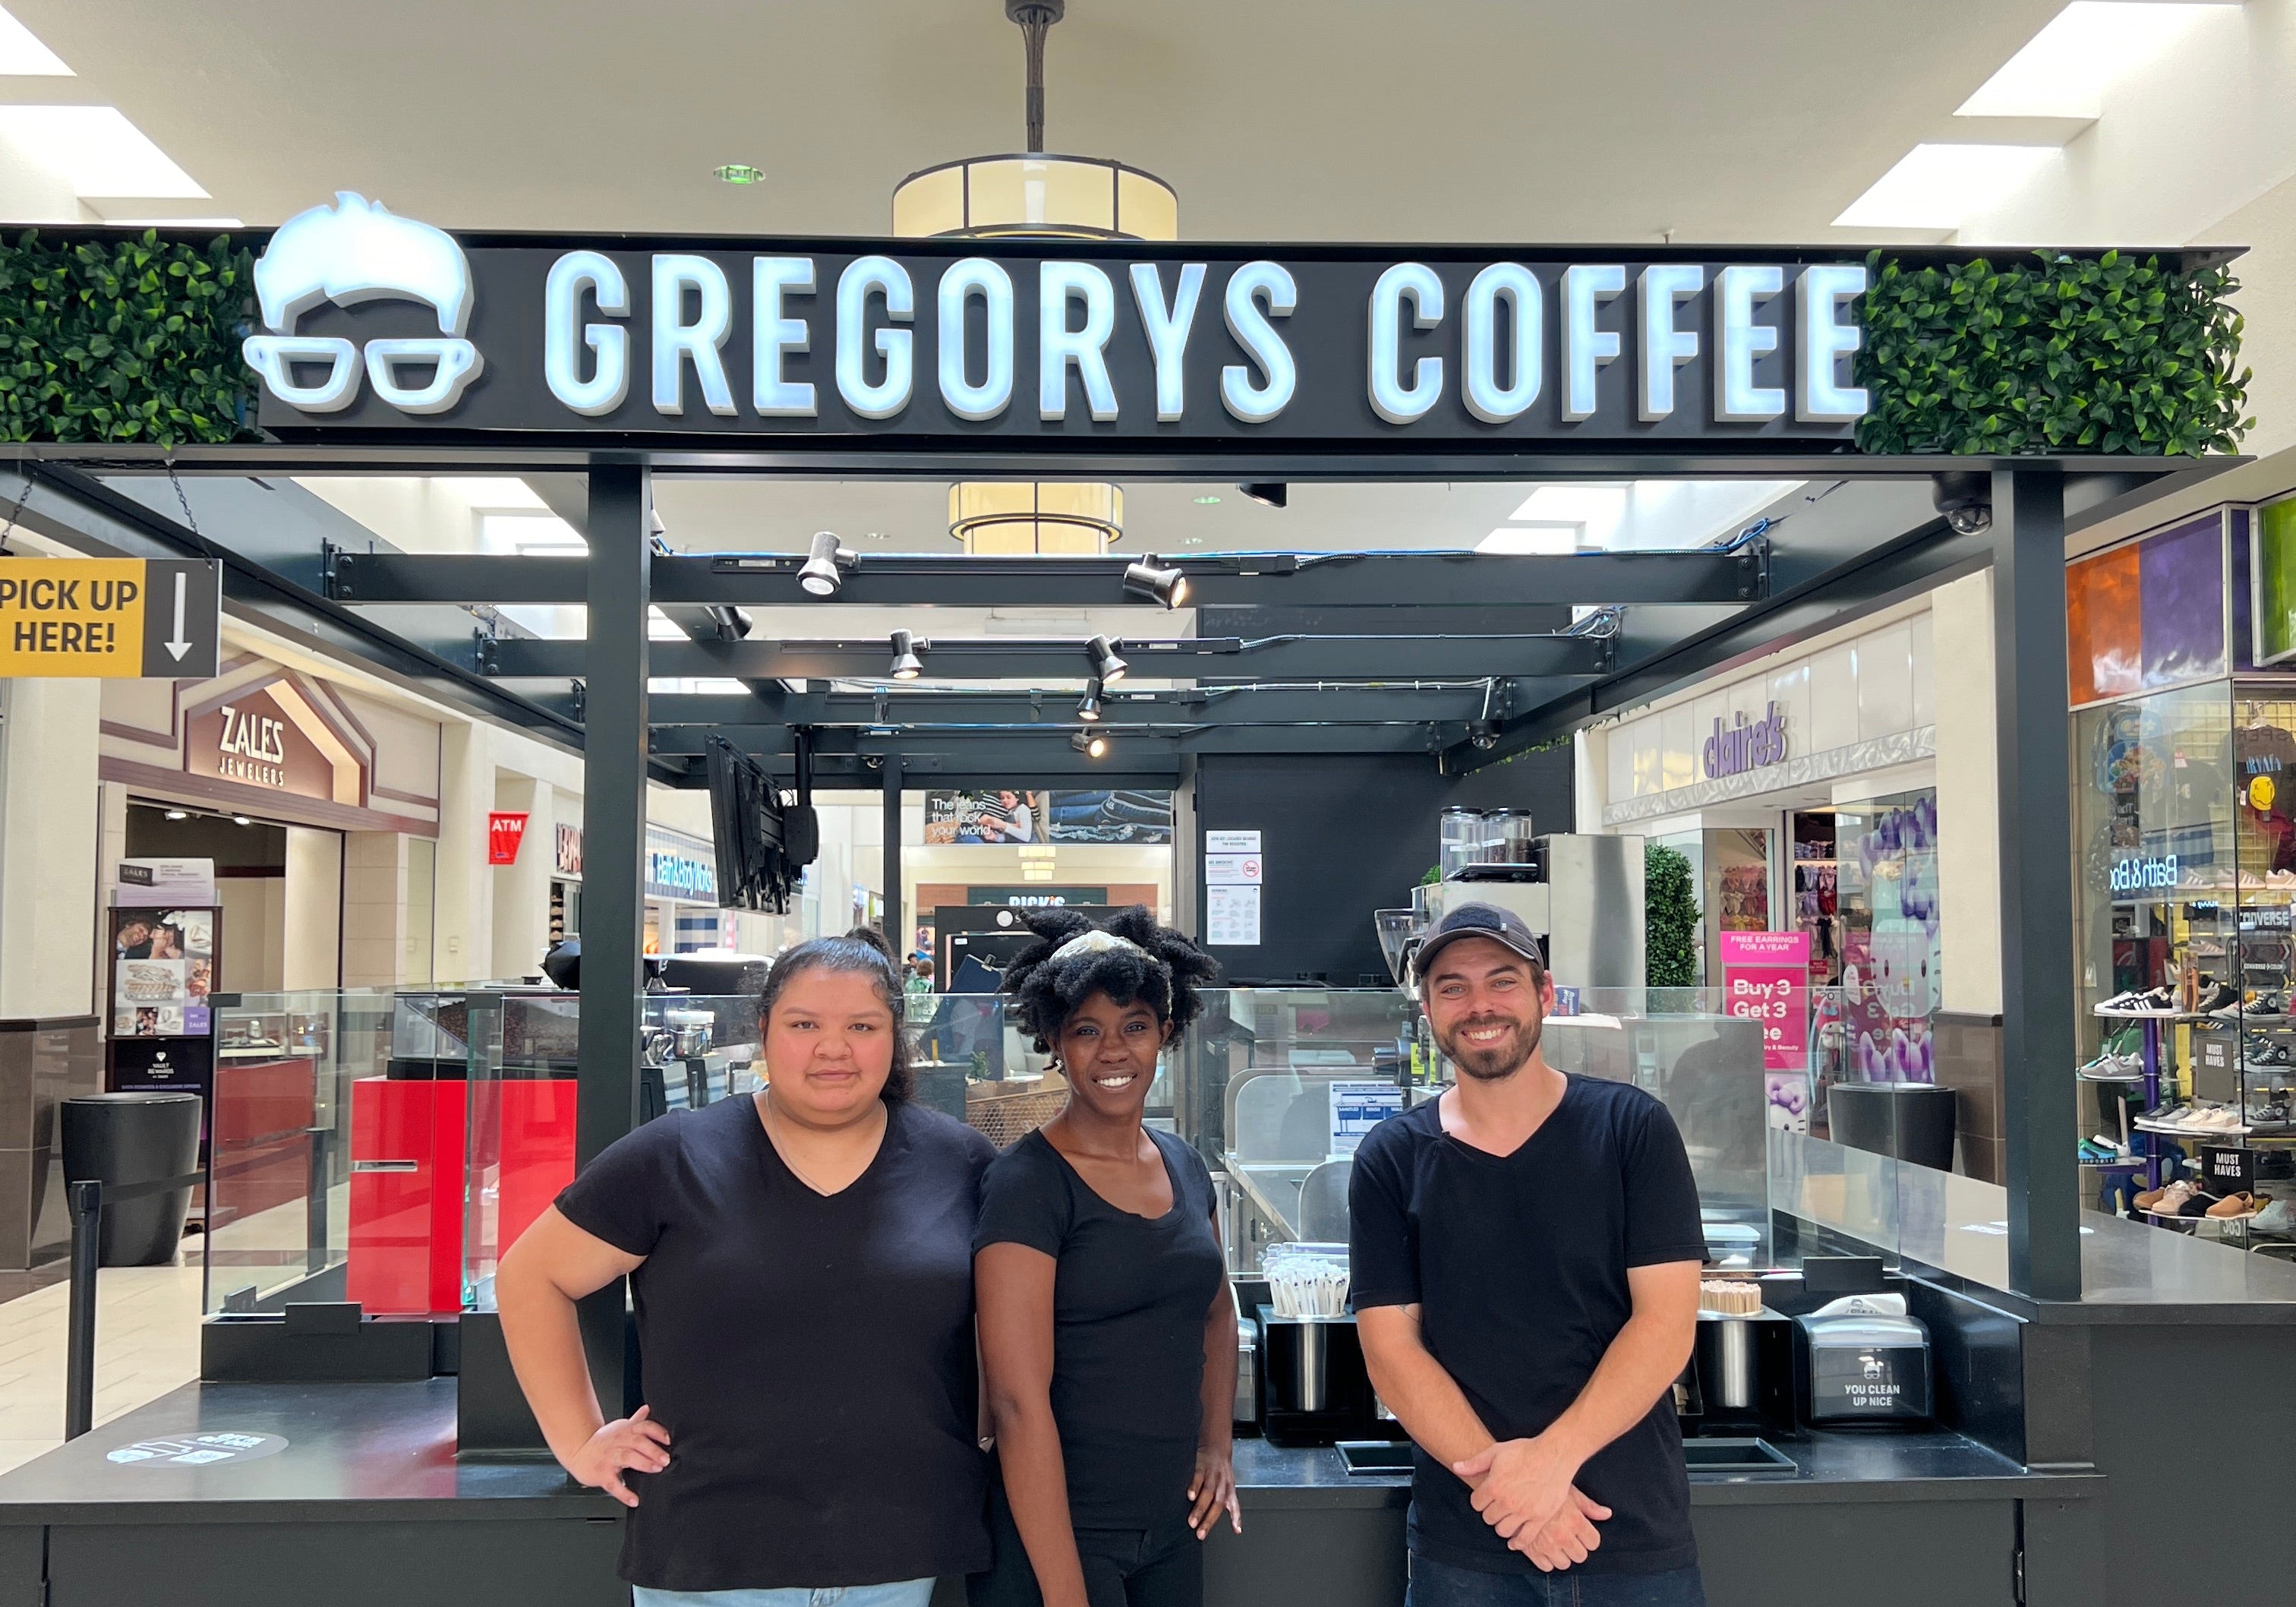 GREGORYS COFFEE NOW OPEN IN TYLER, TEXAS - Gregorys Coffee